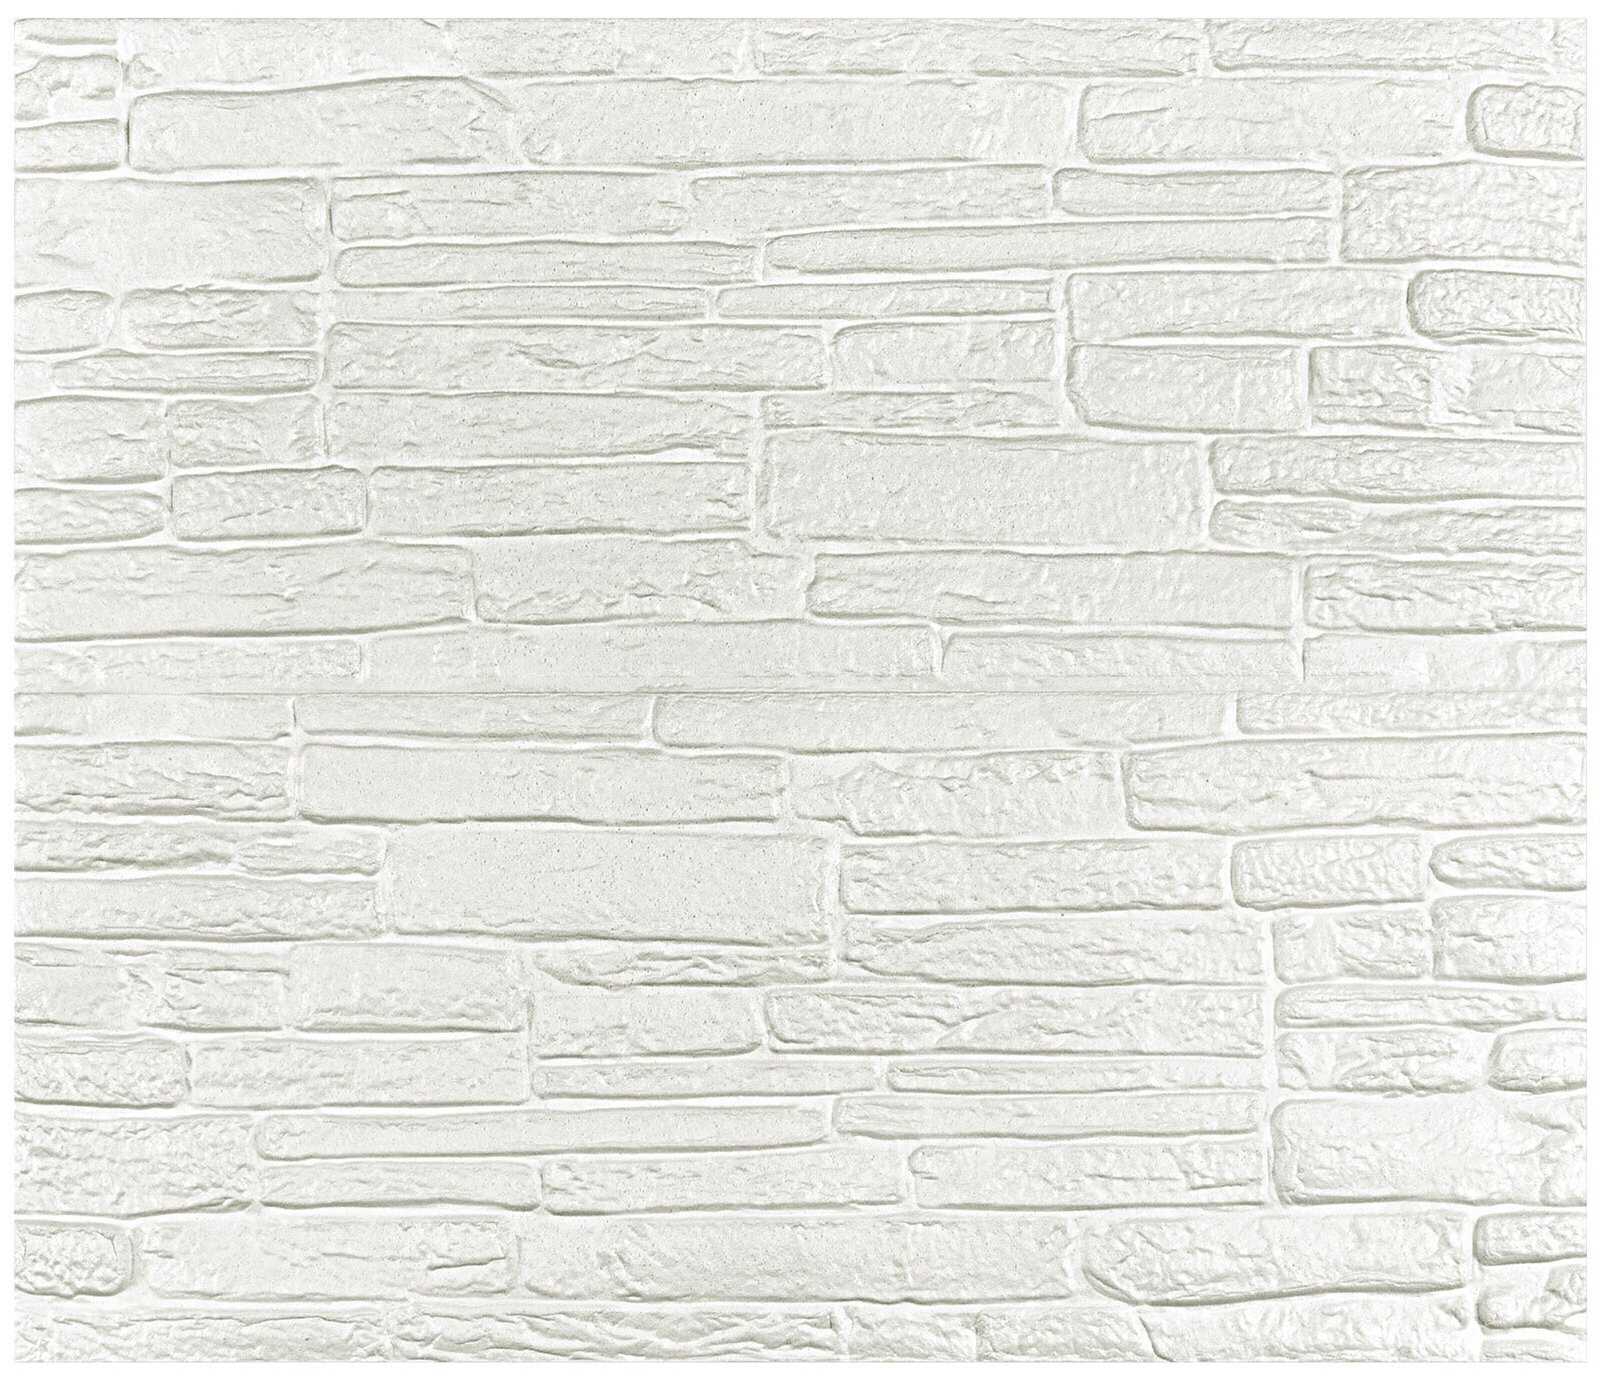 Мягкие самоклеющиеся панели для стен/обои самоклеющиеся/стеновая 3D панель LAKO DECOR/Обработанный камень Серия А, цвет Белый, 70x60см, толщина 8мм